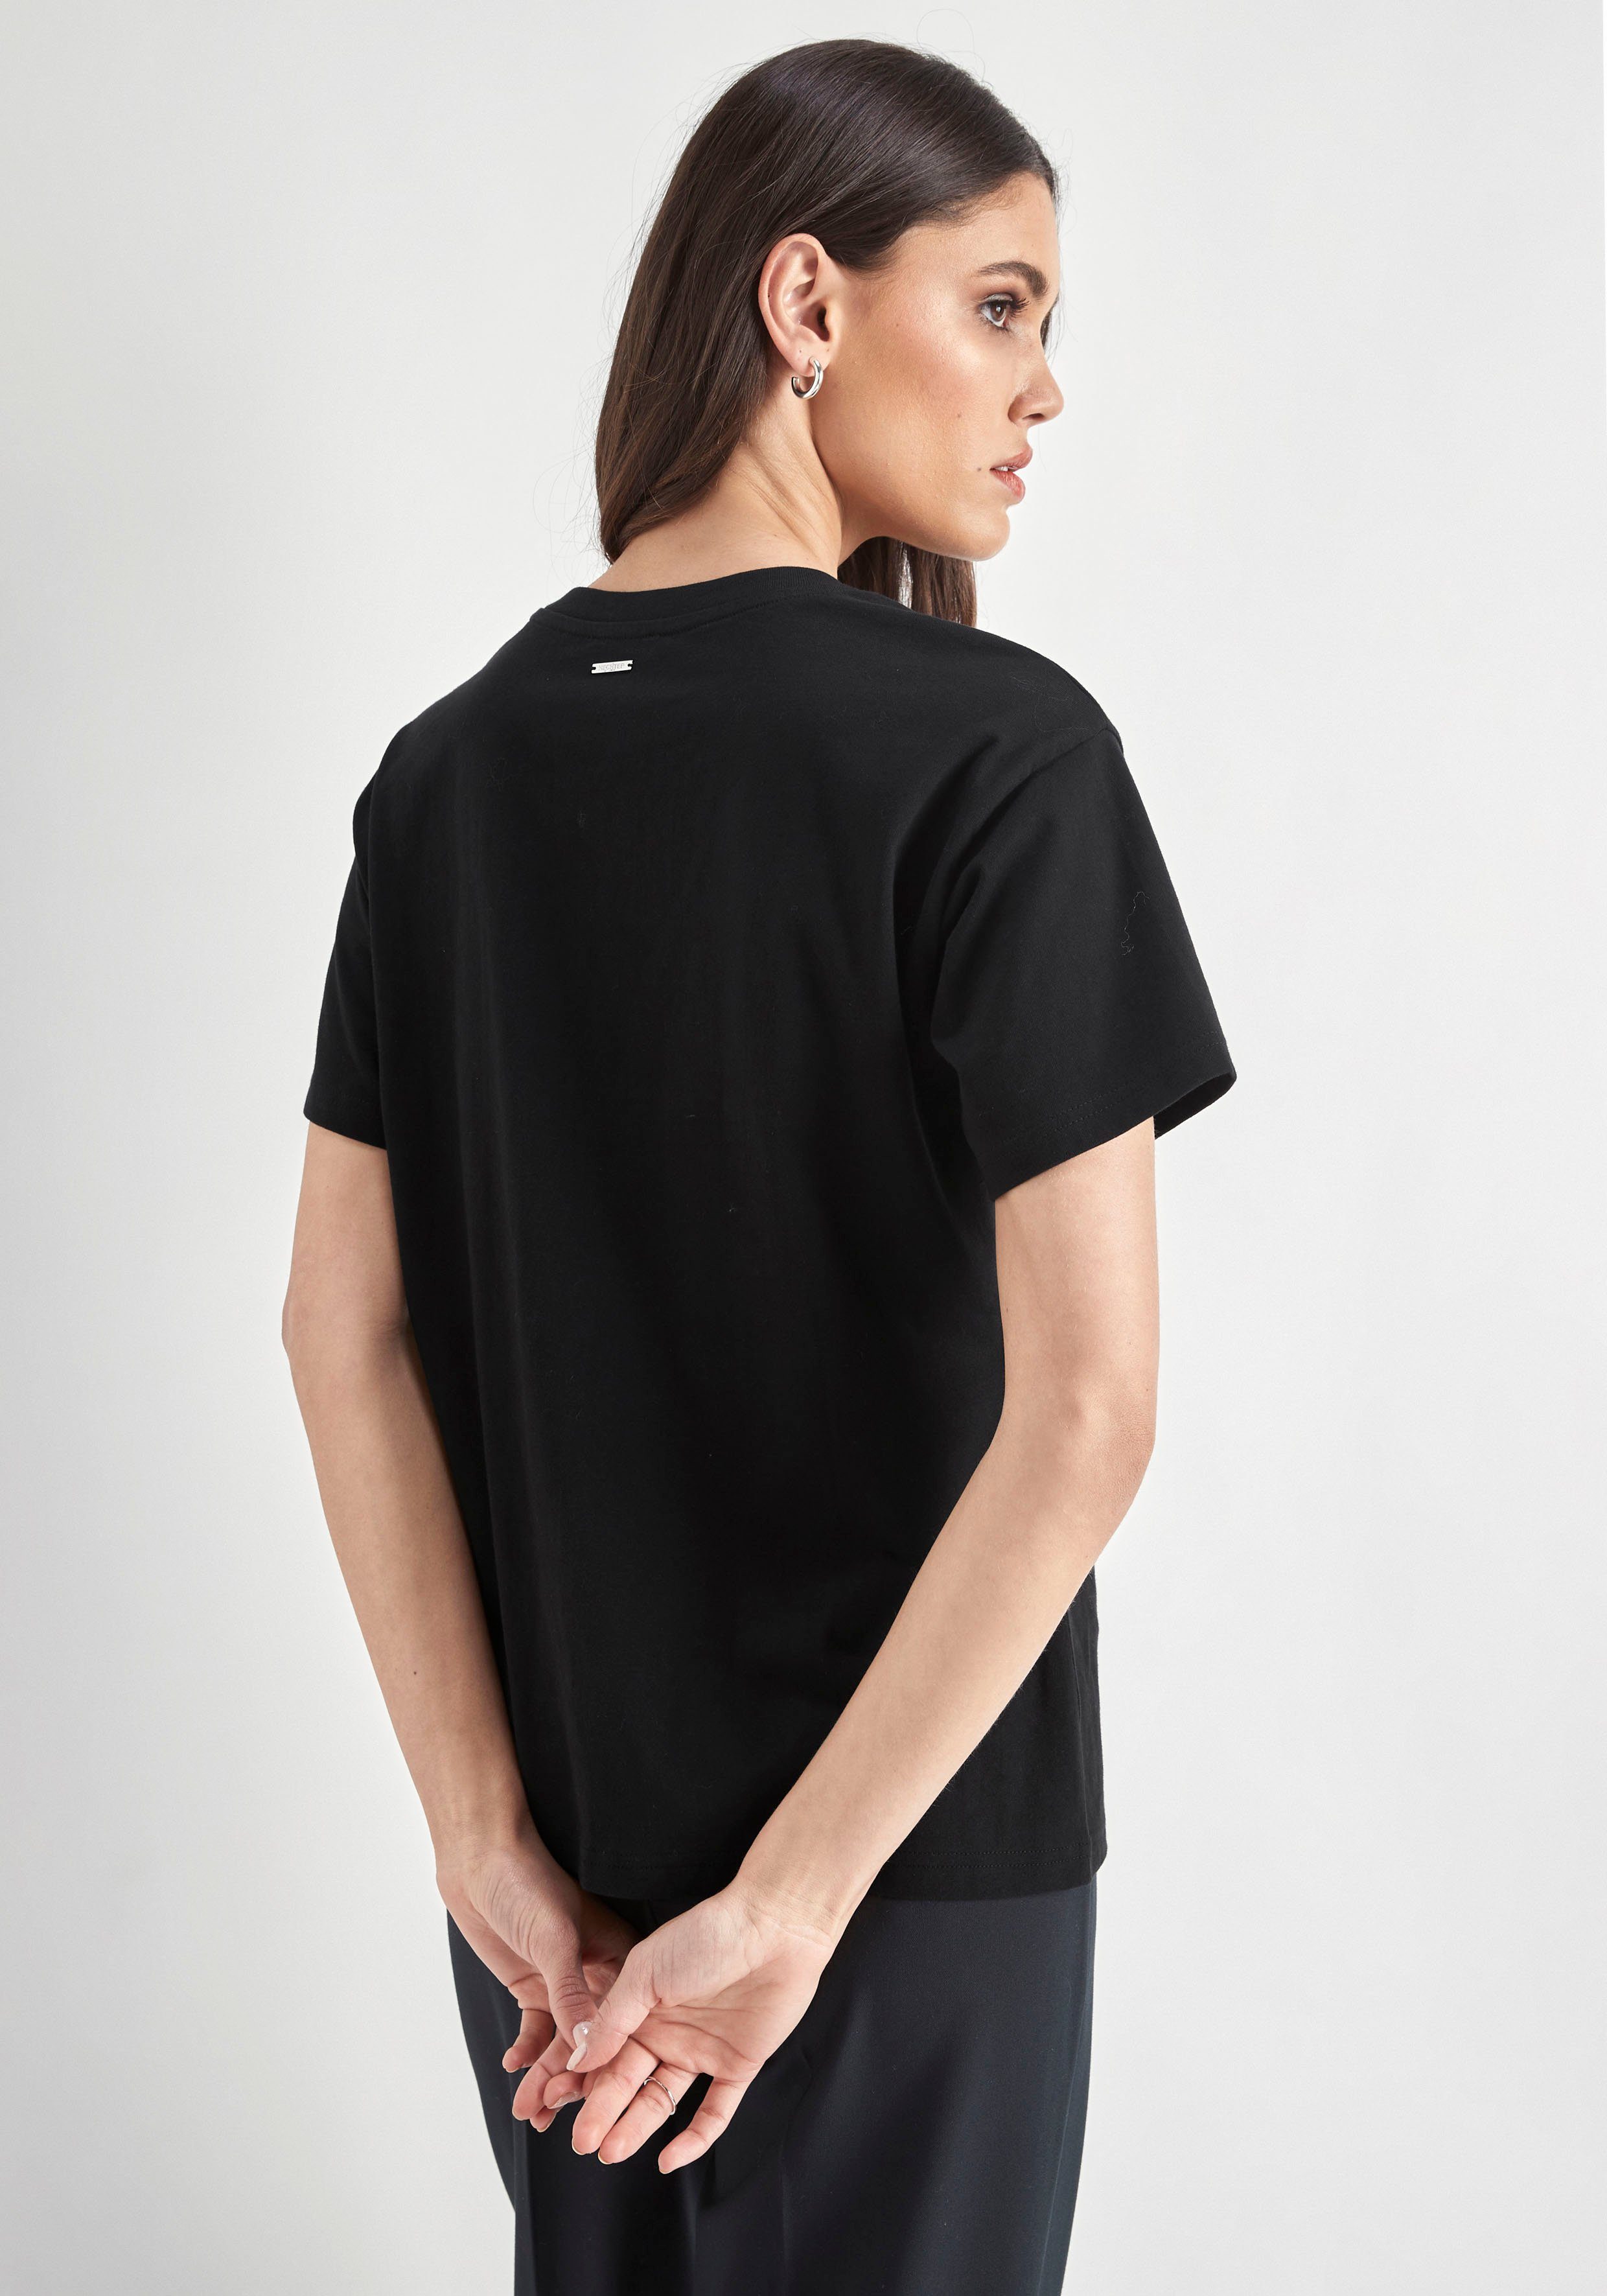 Rundhalsausschnitt PARIS schwarz HECHTER mit T-Shirt